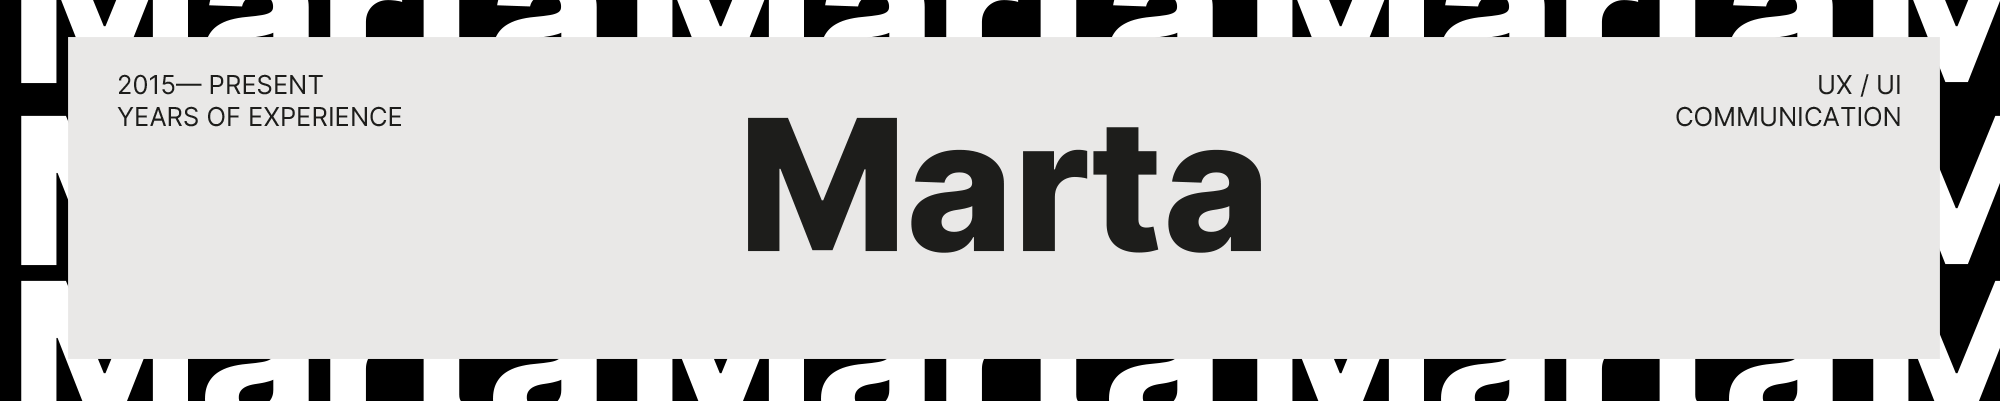 Marta Carvalho's profile banner